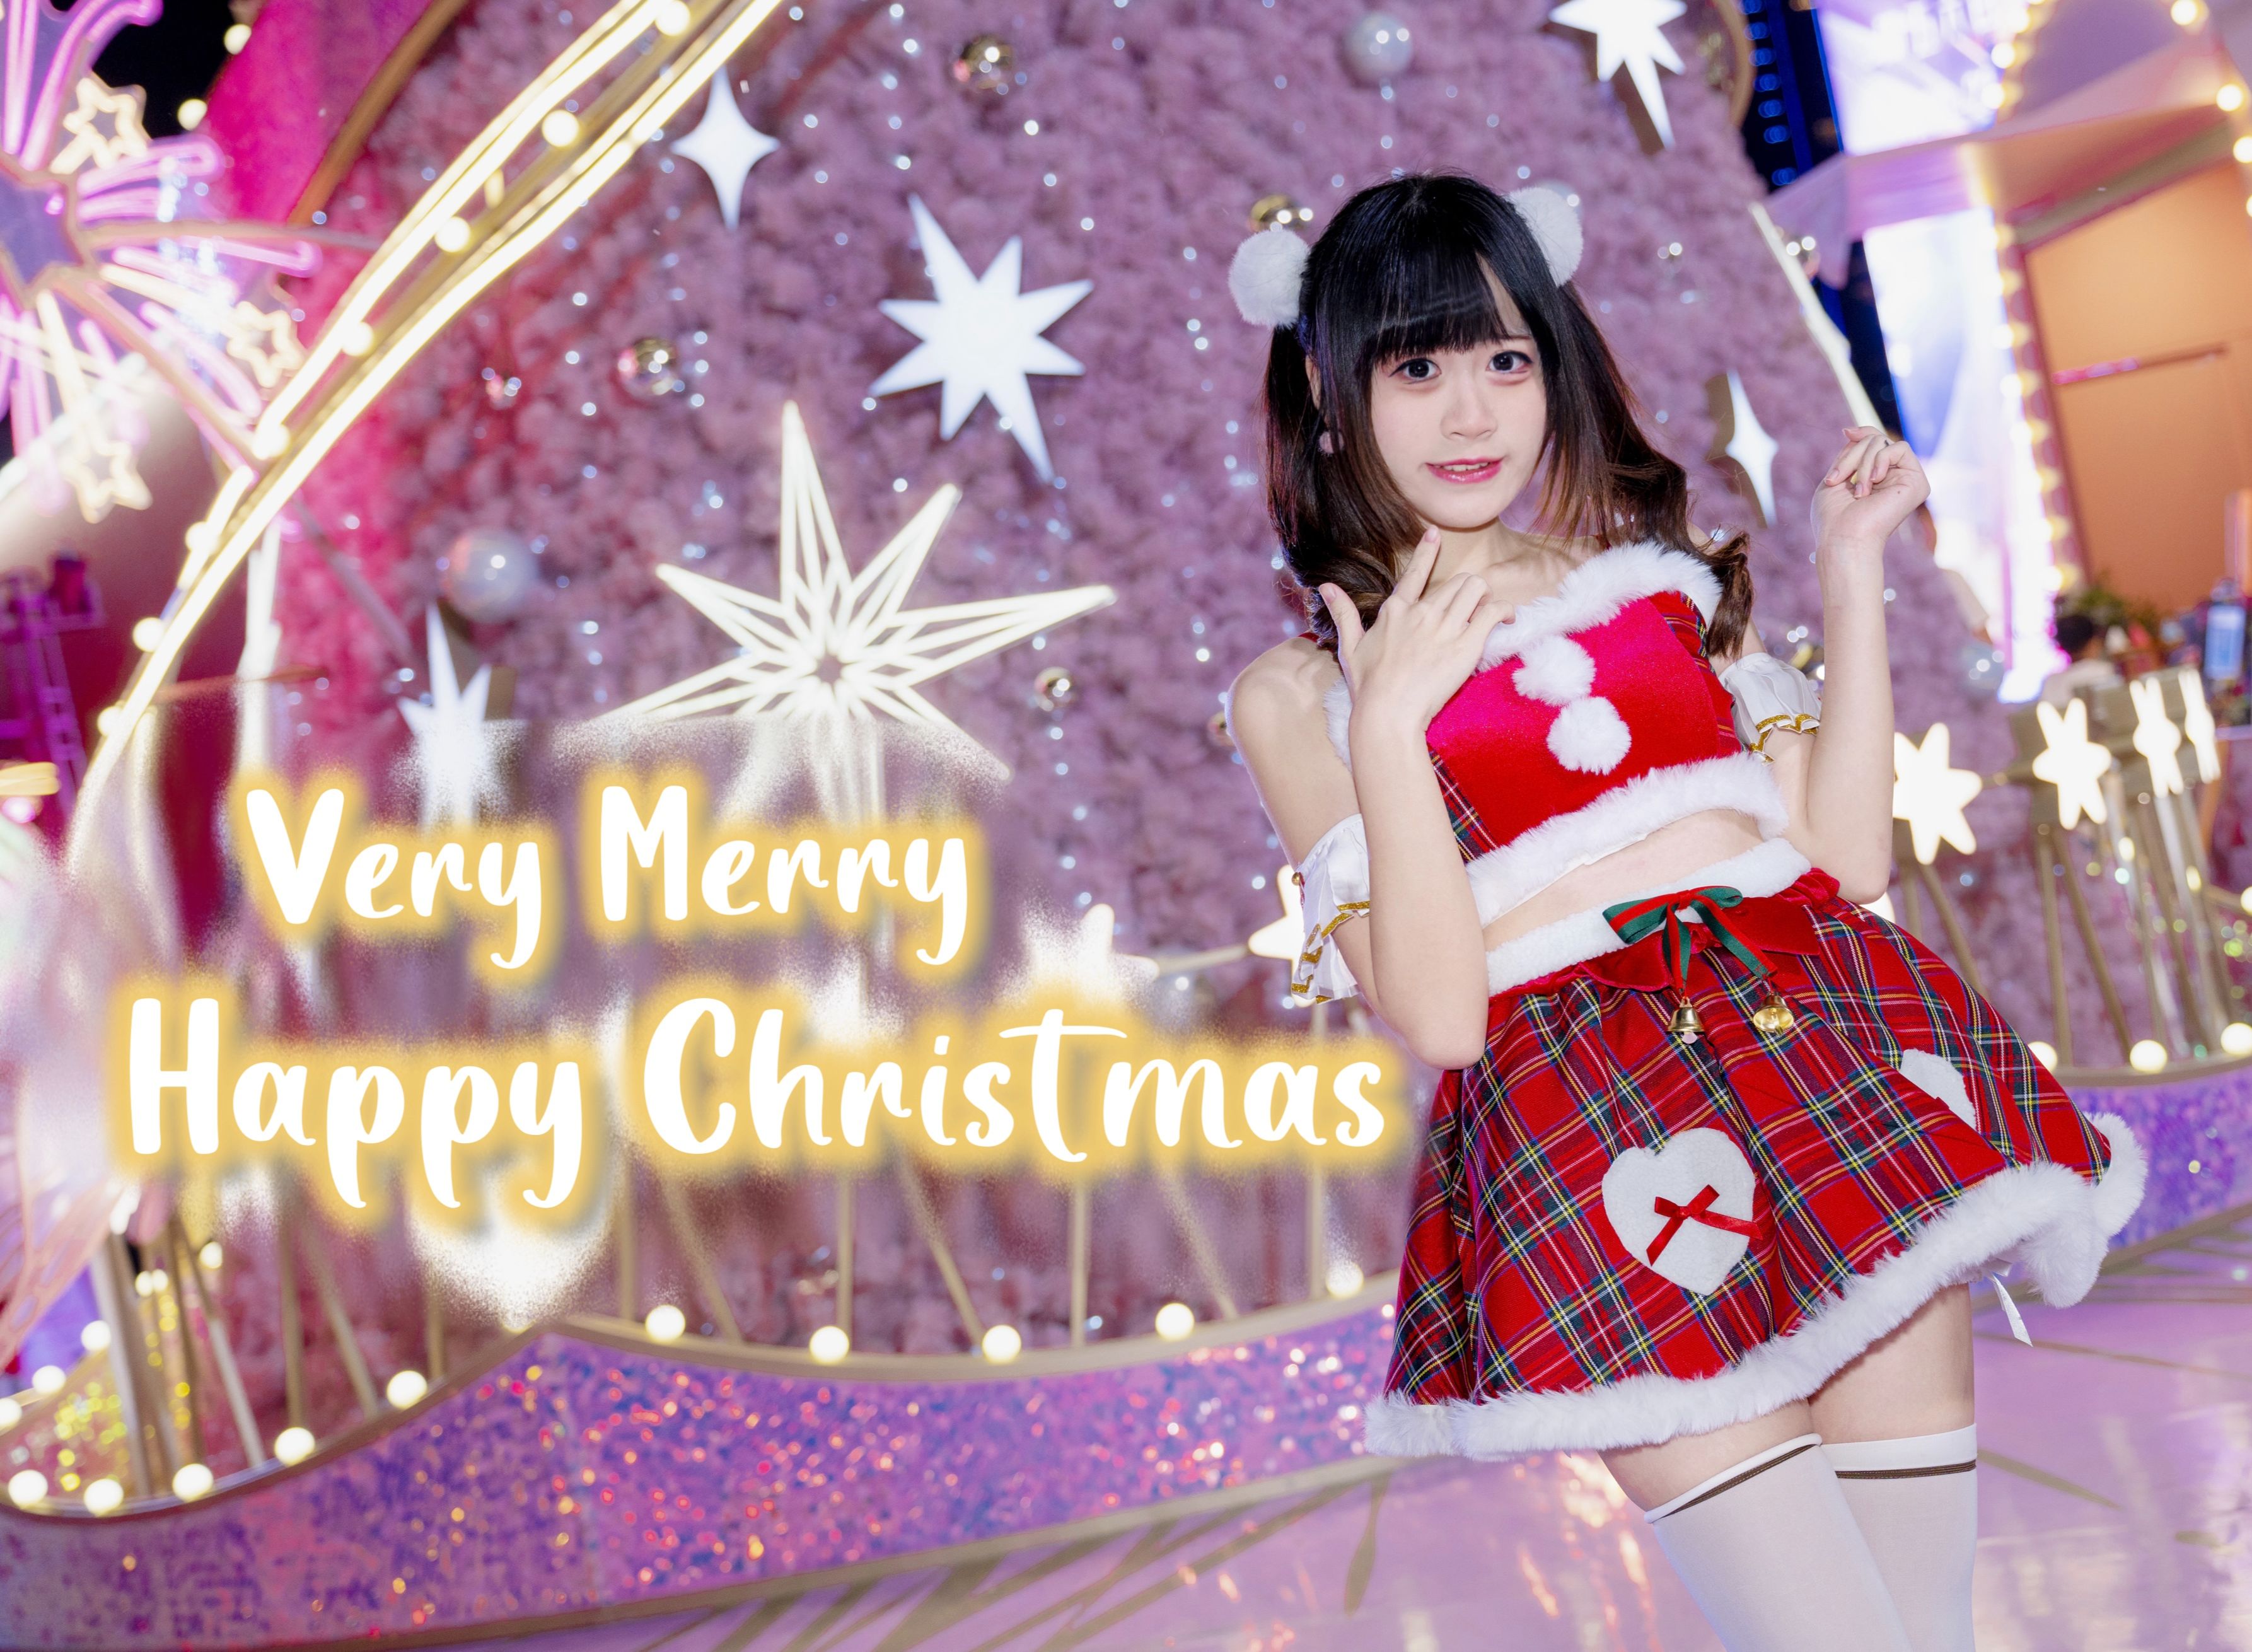 【颜颜】Very Merry Happy Christmas⭐️今晚会和你在圣诞树下相遇吗？